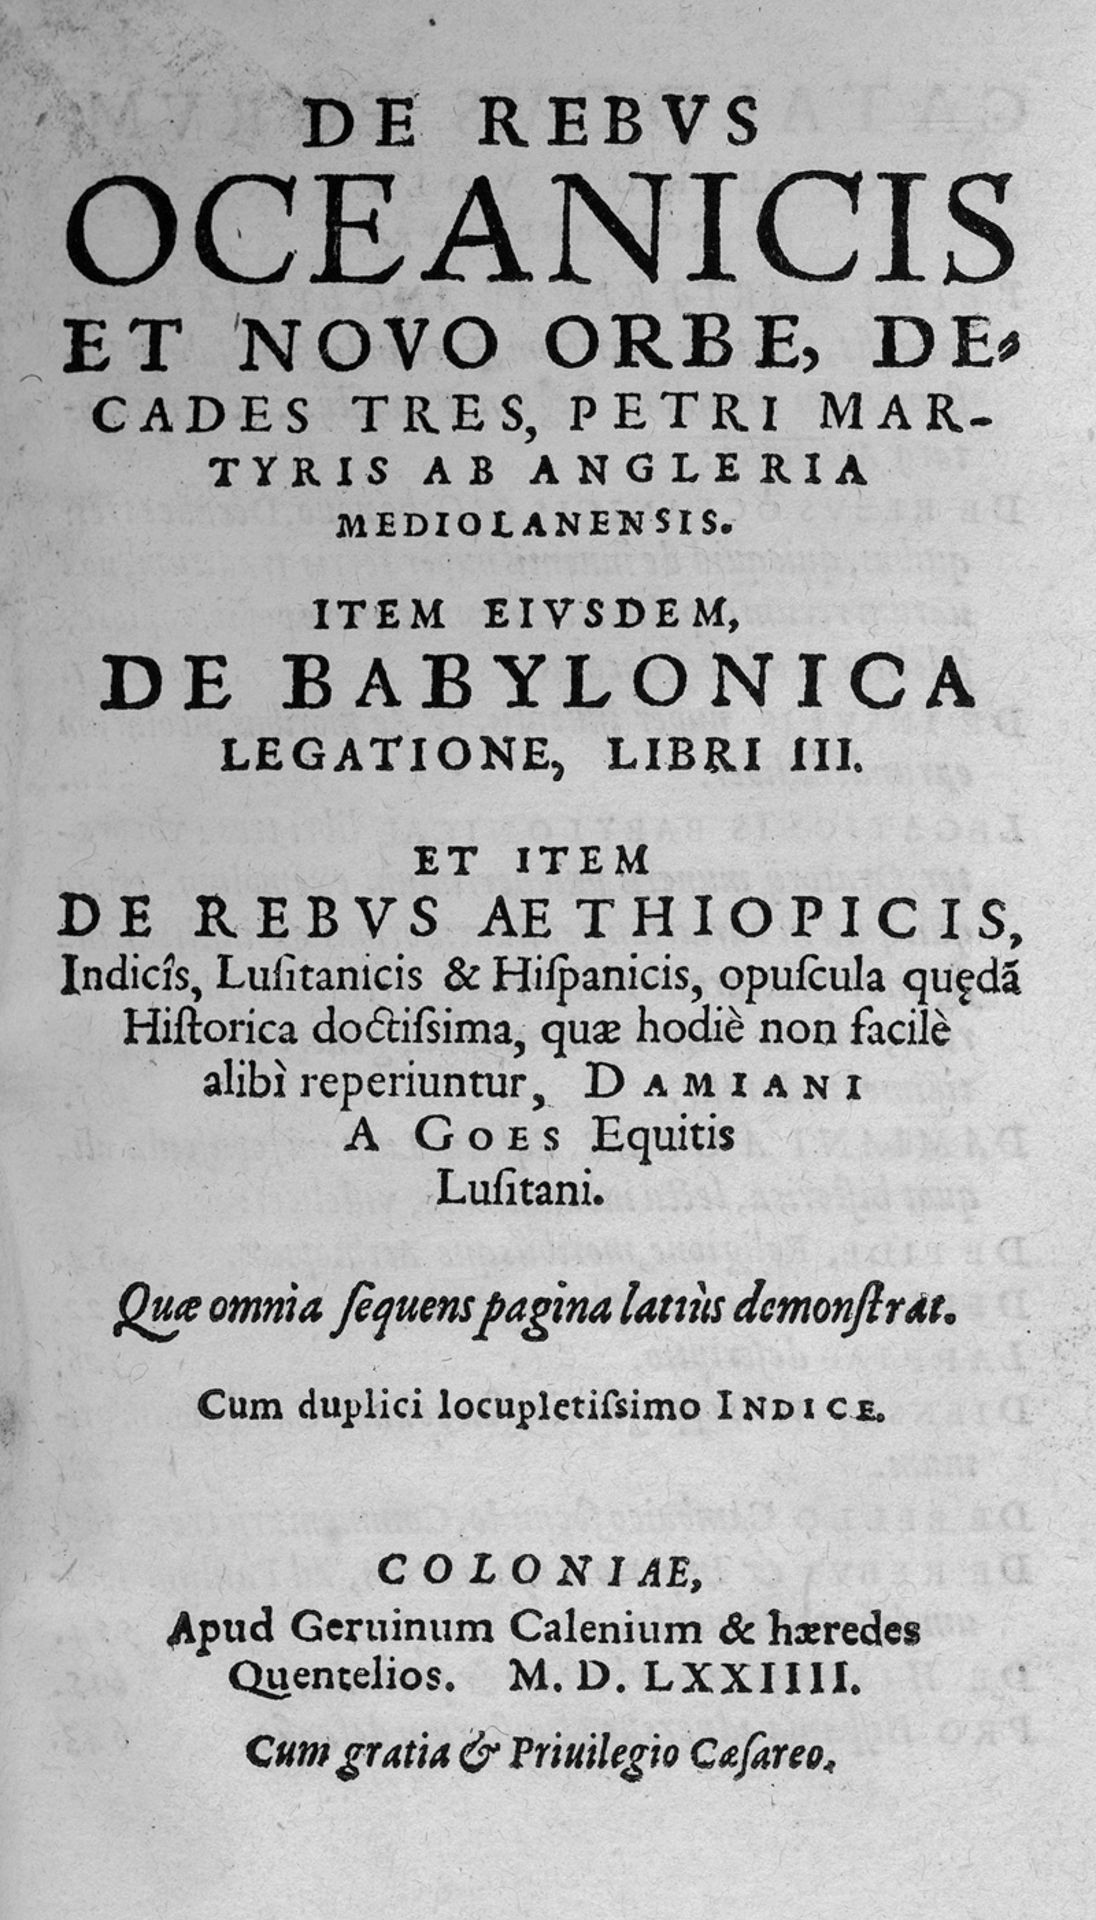 Anghiera, Petrus Martyr von: De rebus oceanicis 